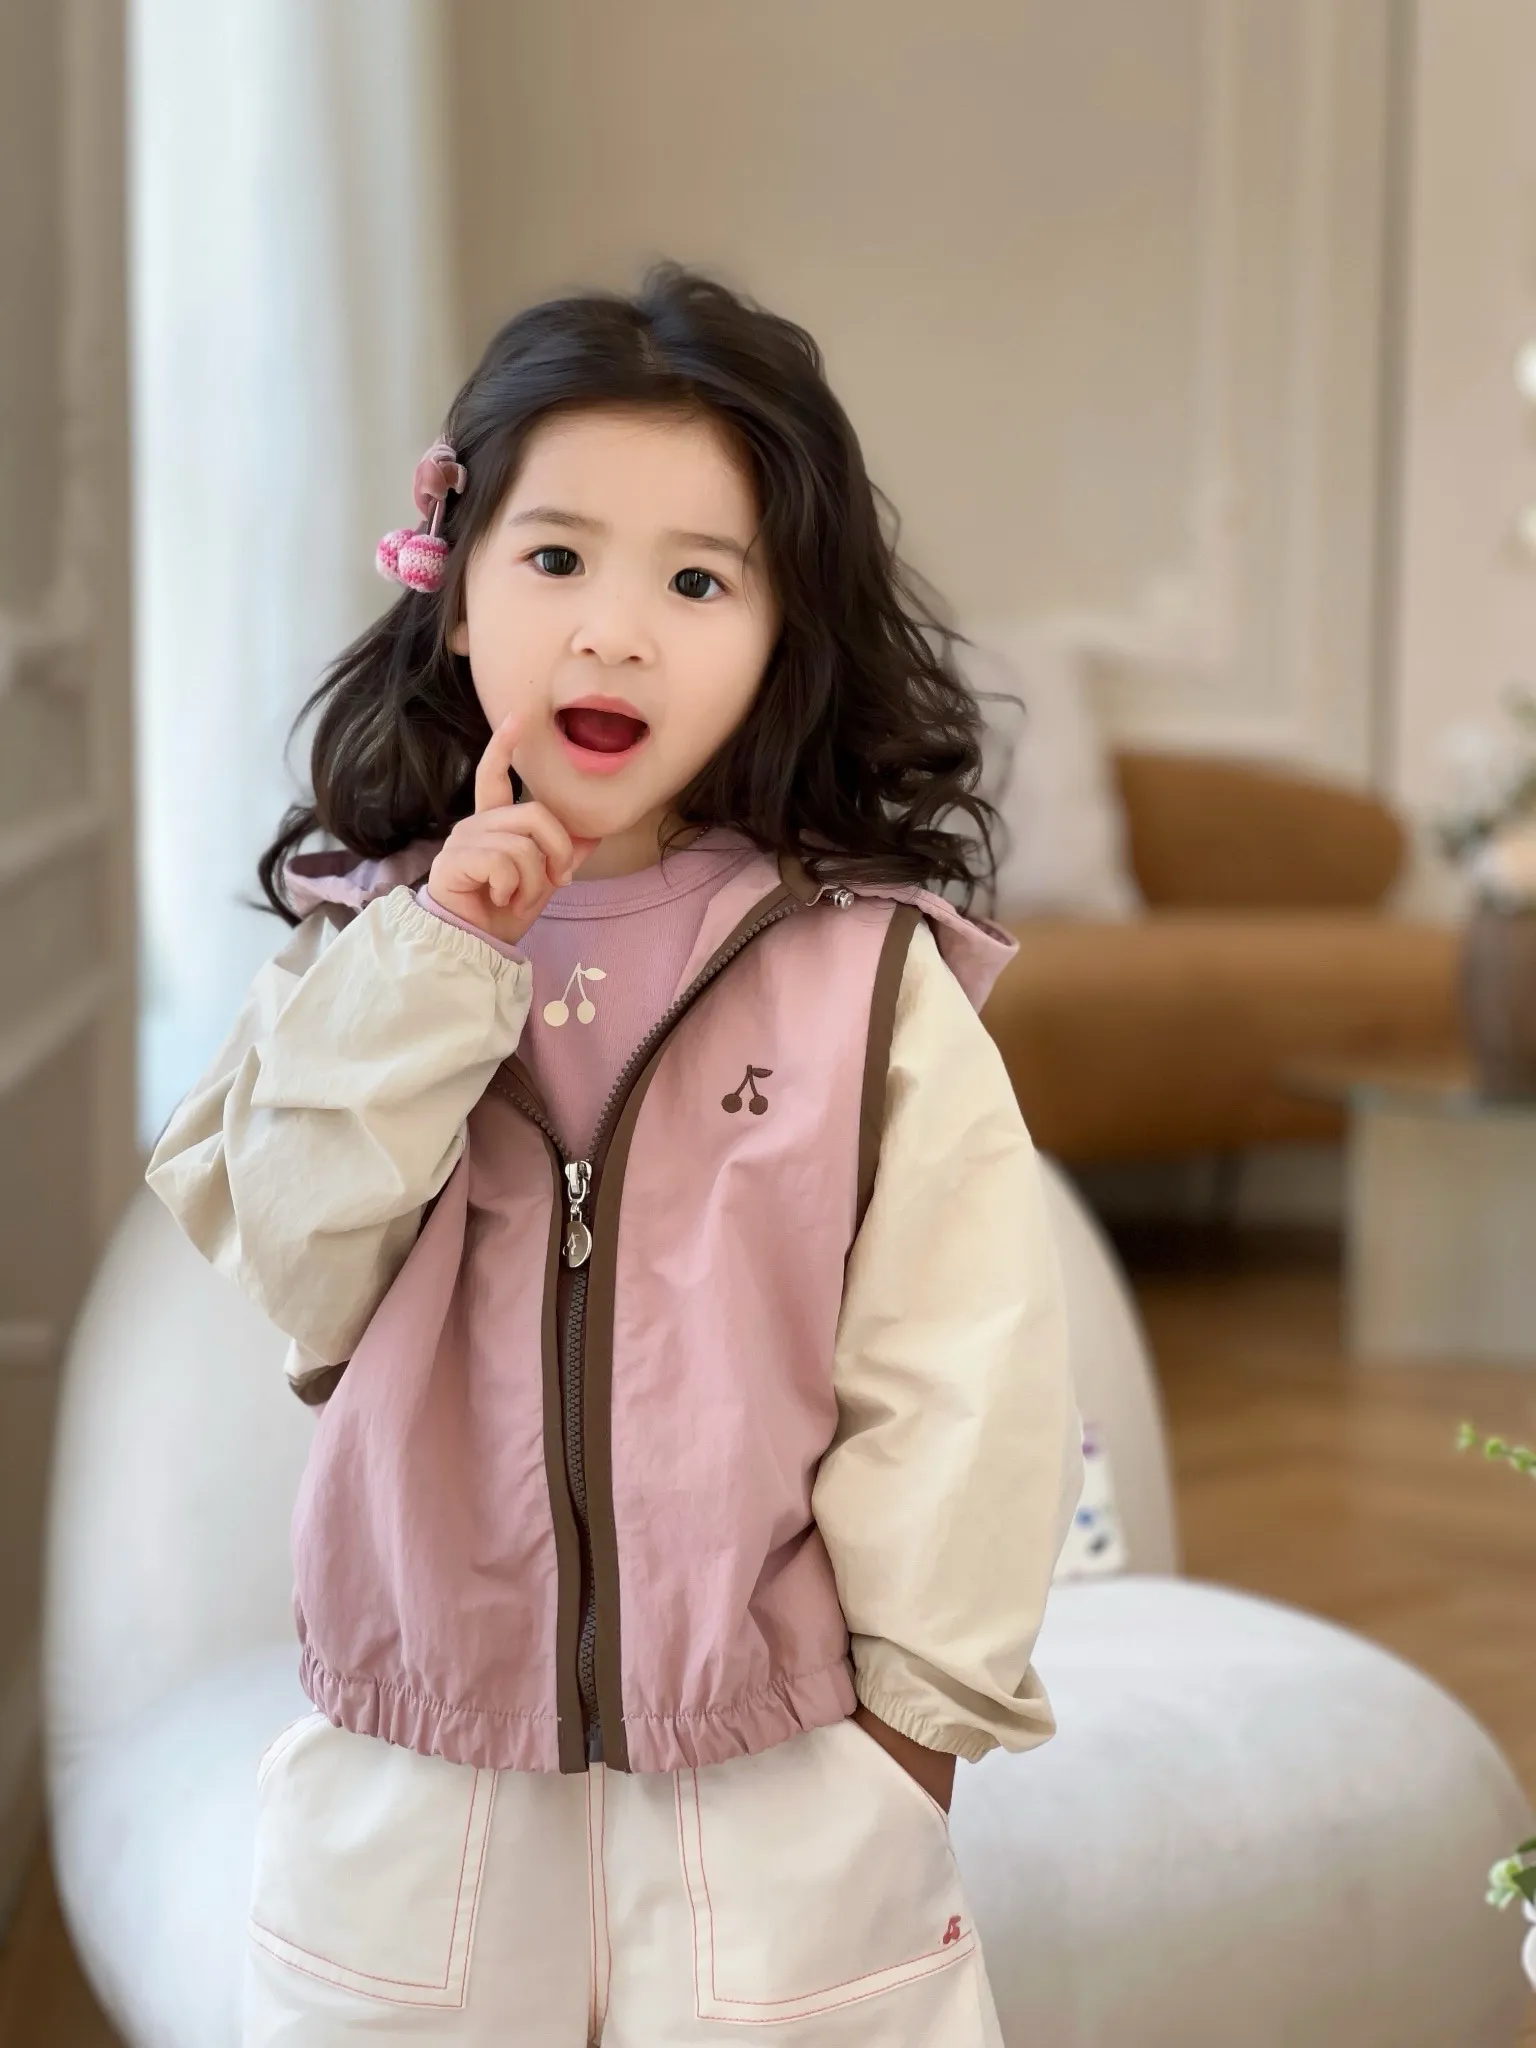 여름 얇은 재킷 패션 어린이 소녀 봄 야외 태양 증명 윈드 브레이커 선 스크린 의류 방수 재킷 야외 스포츠 후드 재킷